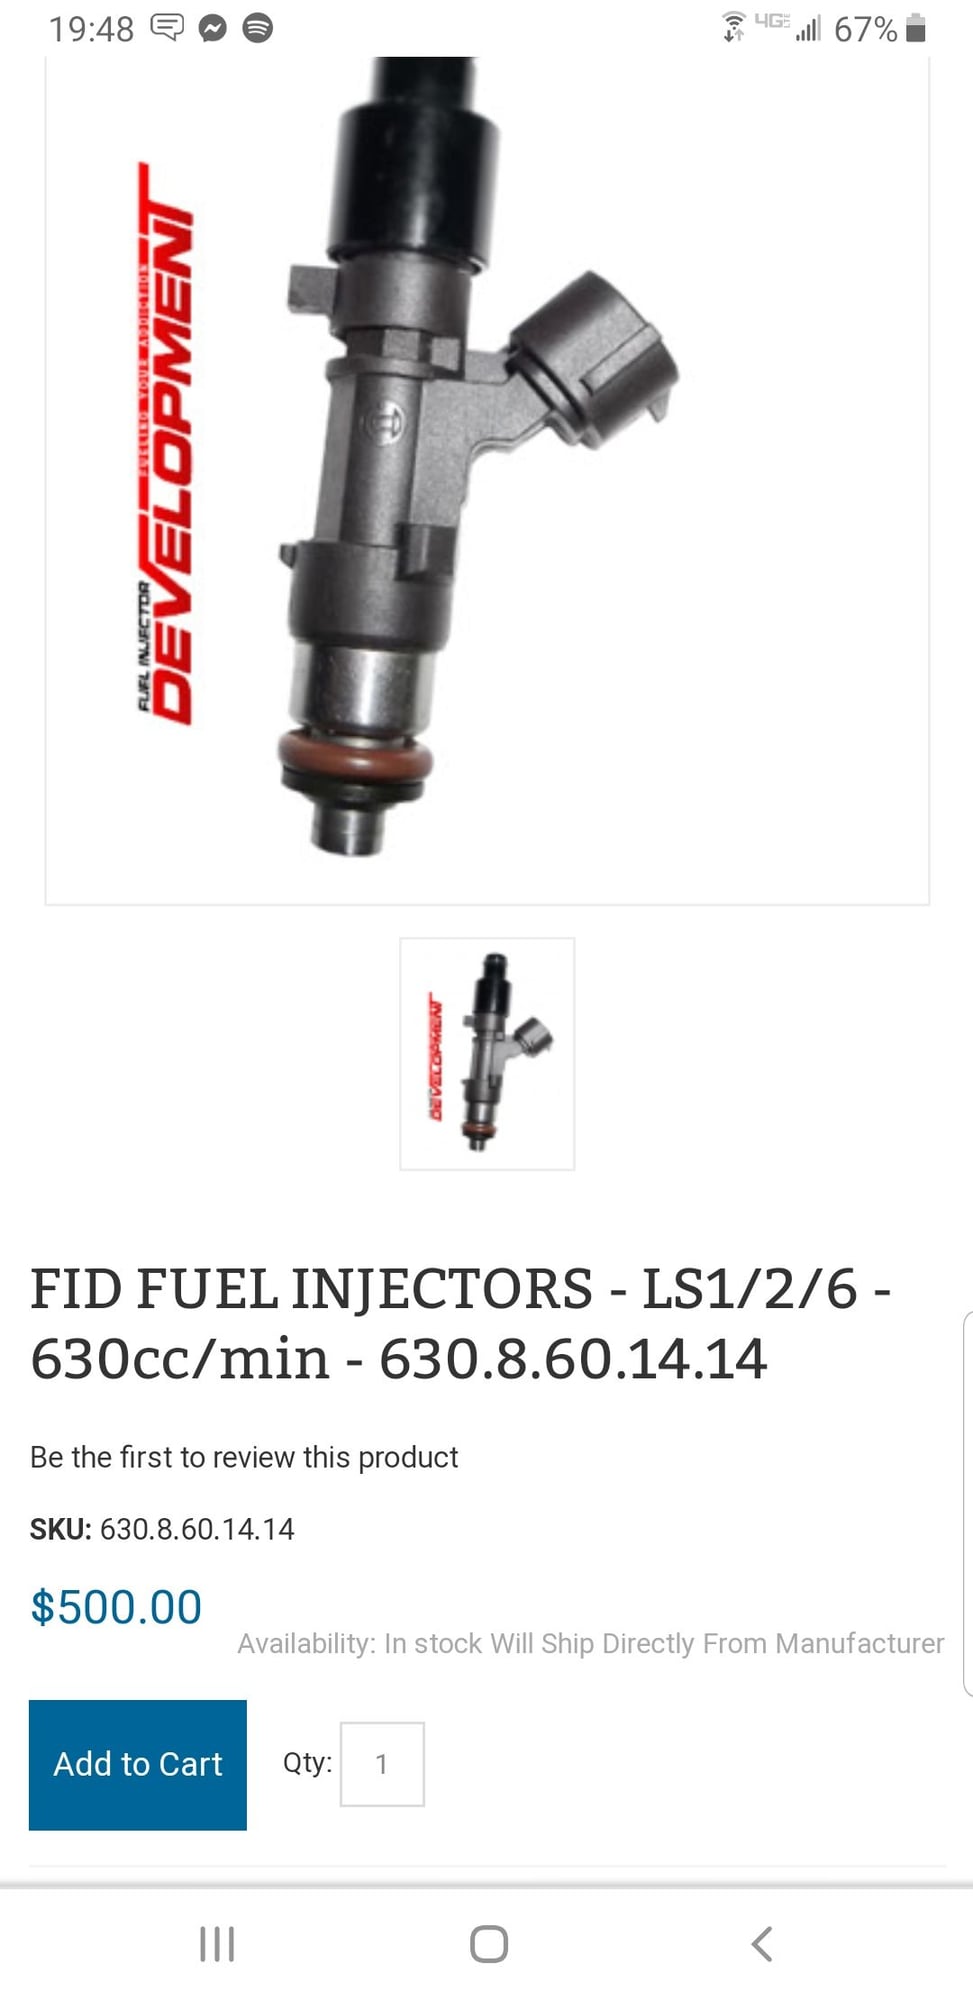  - FID 630cc injectors - Bristol, TN 37620, United States